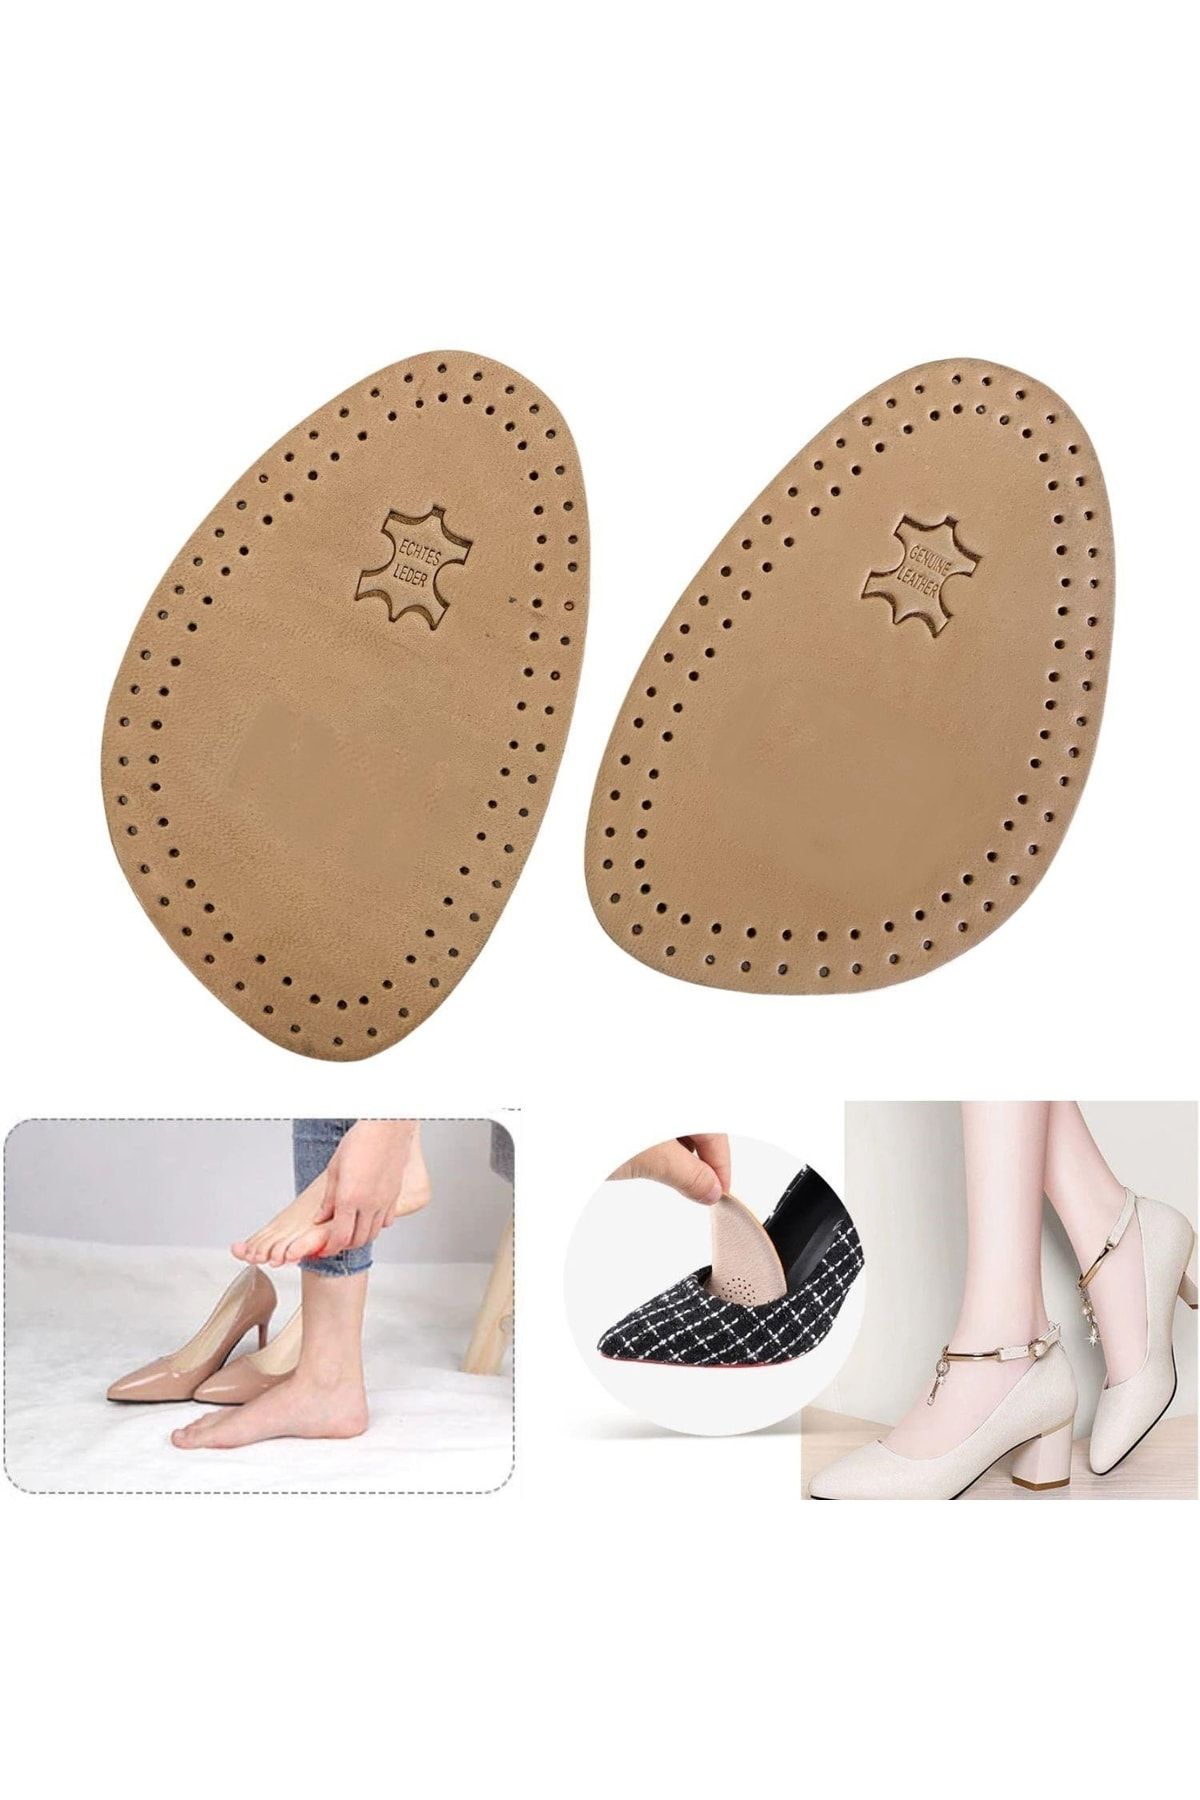 Foottab Ayakkabı Küçültme Pedi, Deri, Yüksek Topuklu Stiletto Ayakkabı Kaydırmaz Tabanlığı, 1 Çift